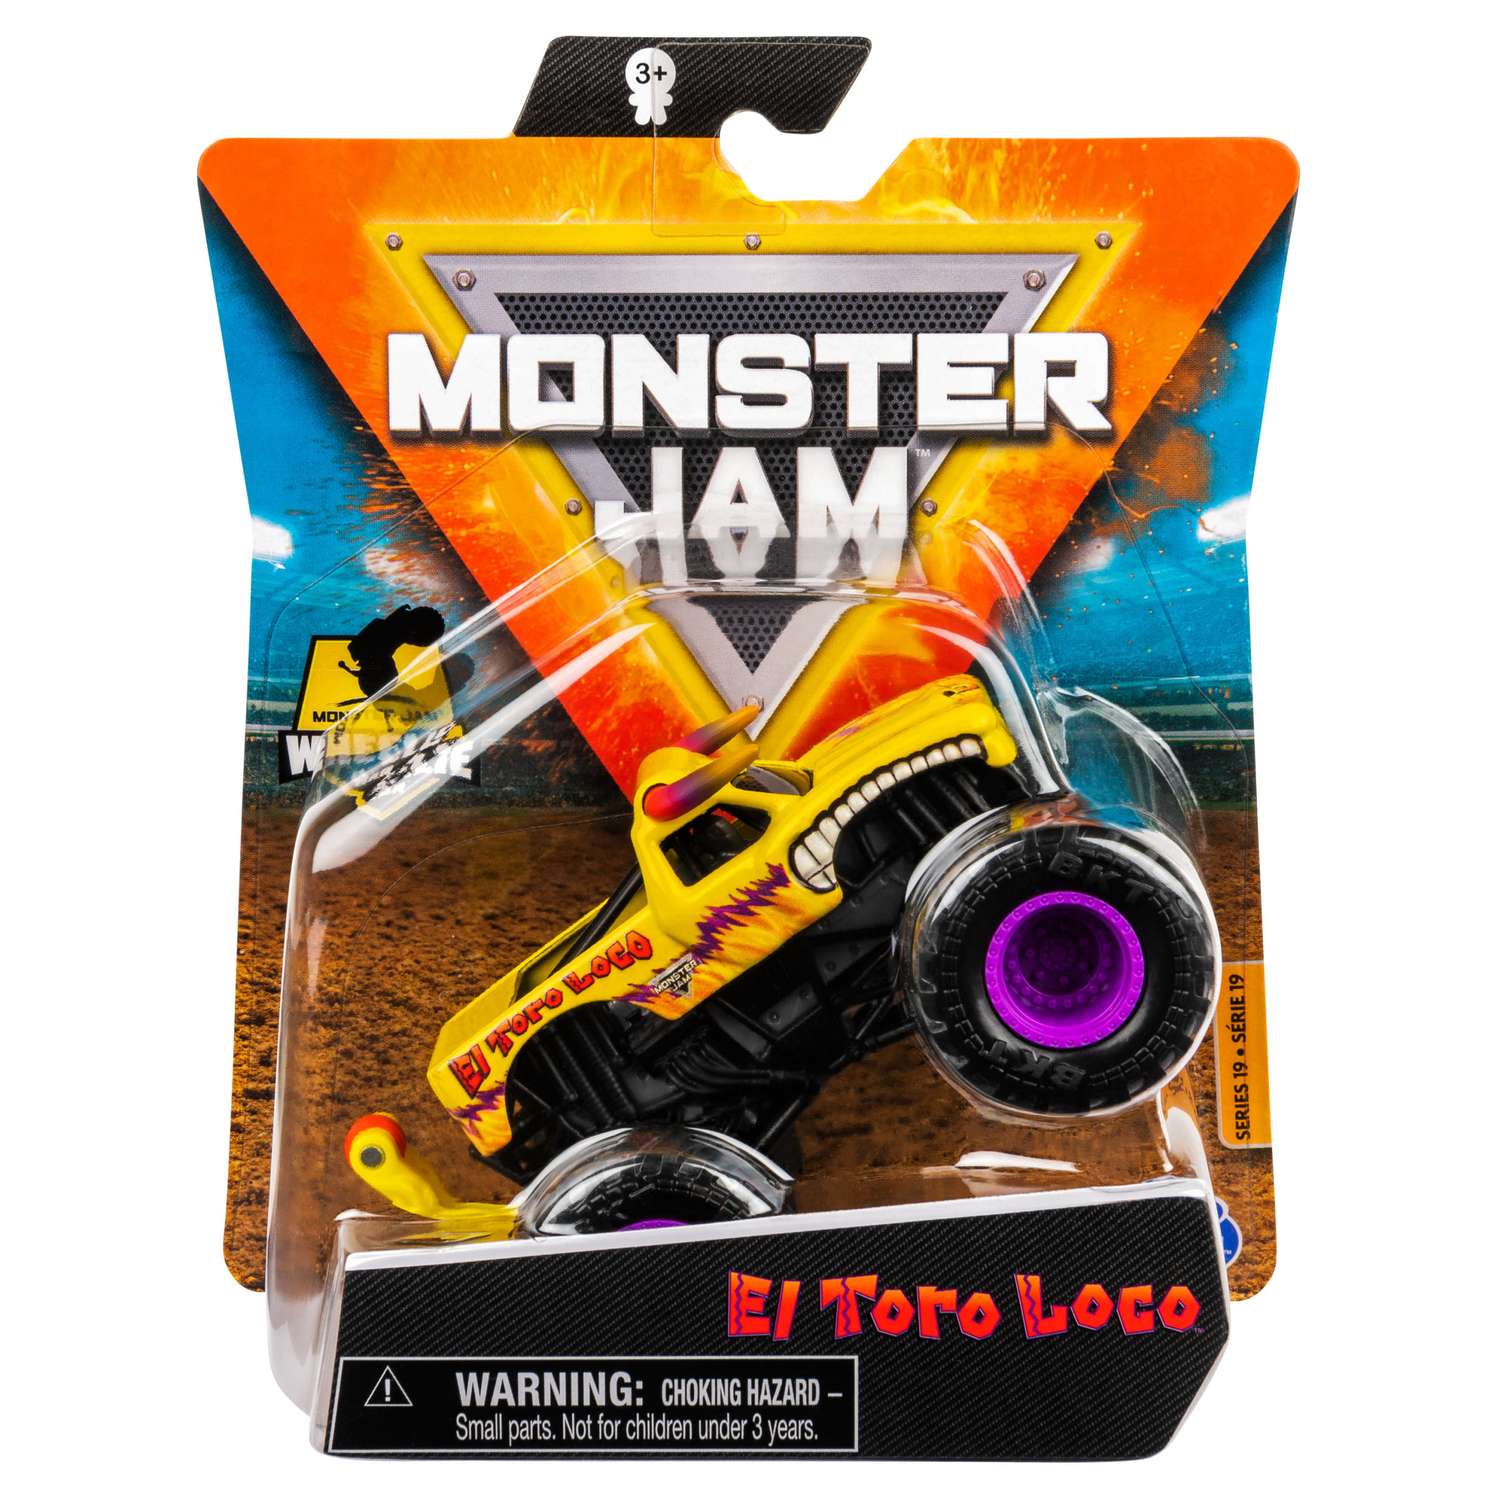 Машинка Monster Jam 1:64 El Toro Loco Yellow 6044941/20130599 6044941 - фото 1